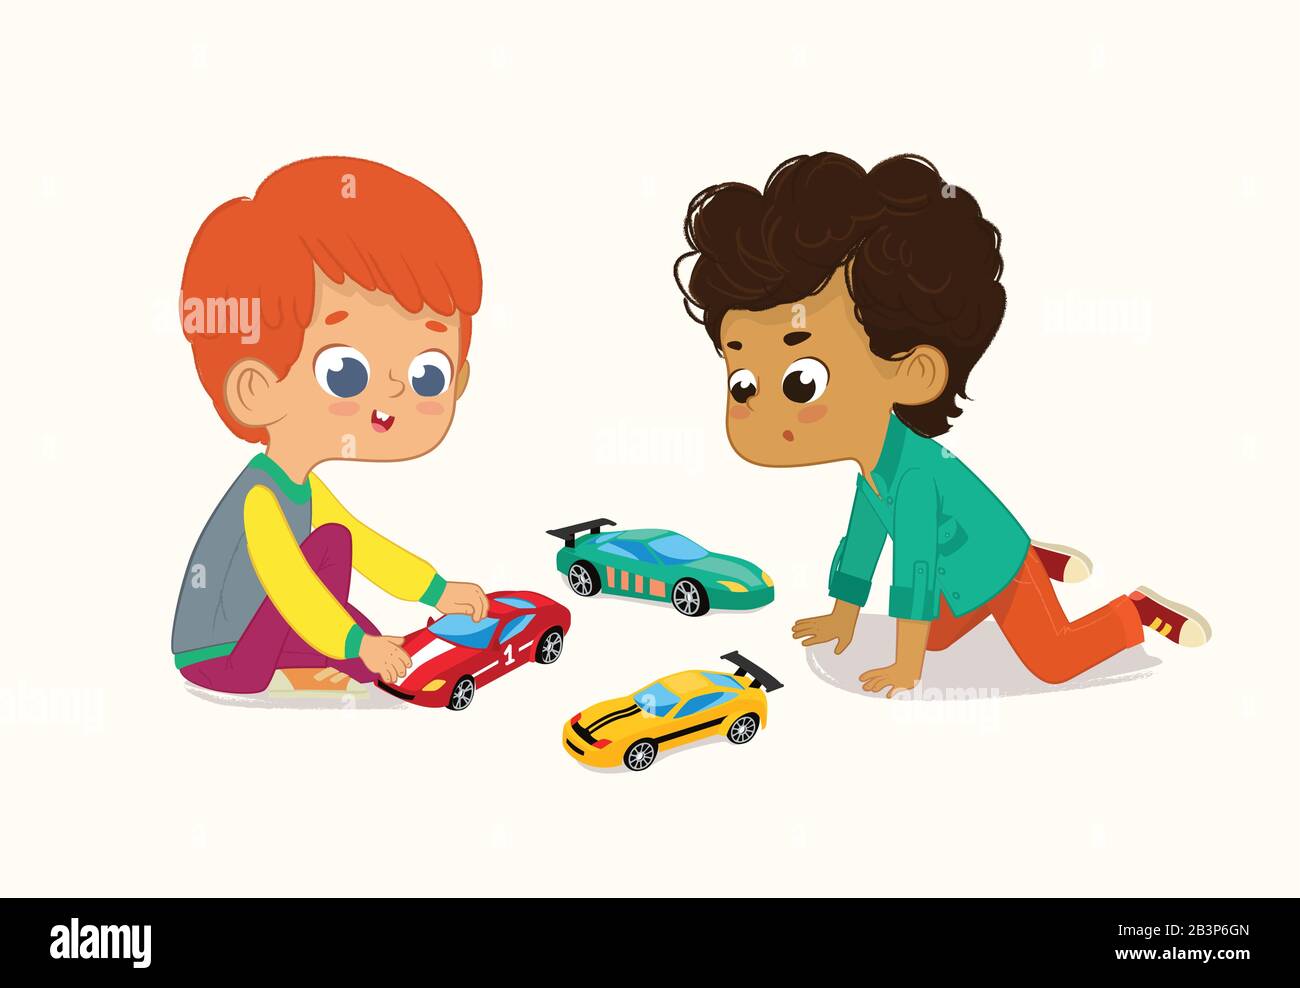 Abbildung: Zwei Niedliche Jungen, Die Mit Ihren Toys Cars Spielen. Der rote Haarjunge zeigt und teilt seine Spielzeugautos seinem afroamerikanischen Freund. Stock Vektor